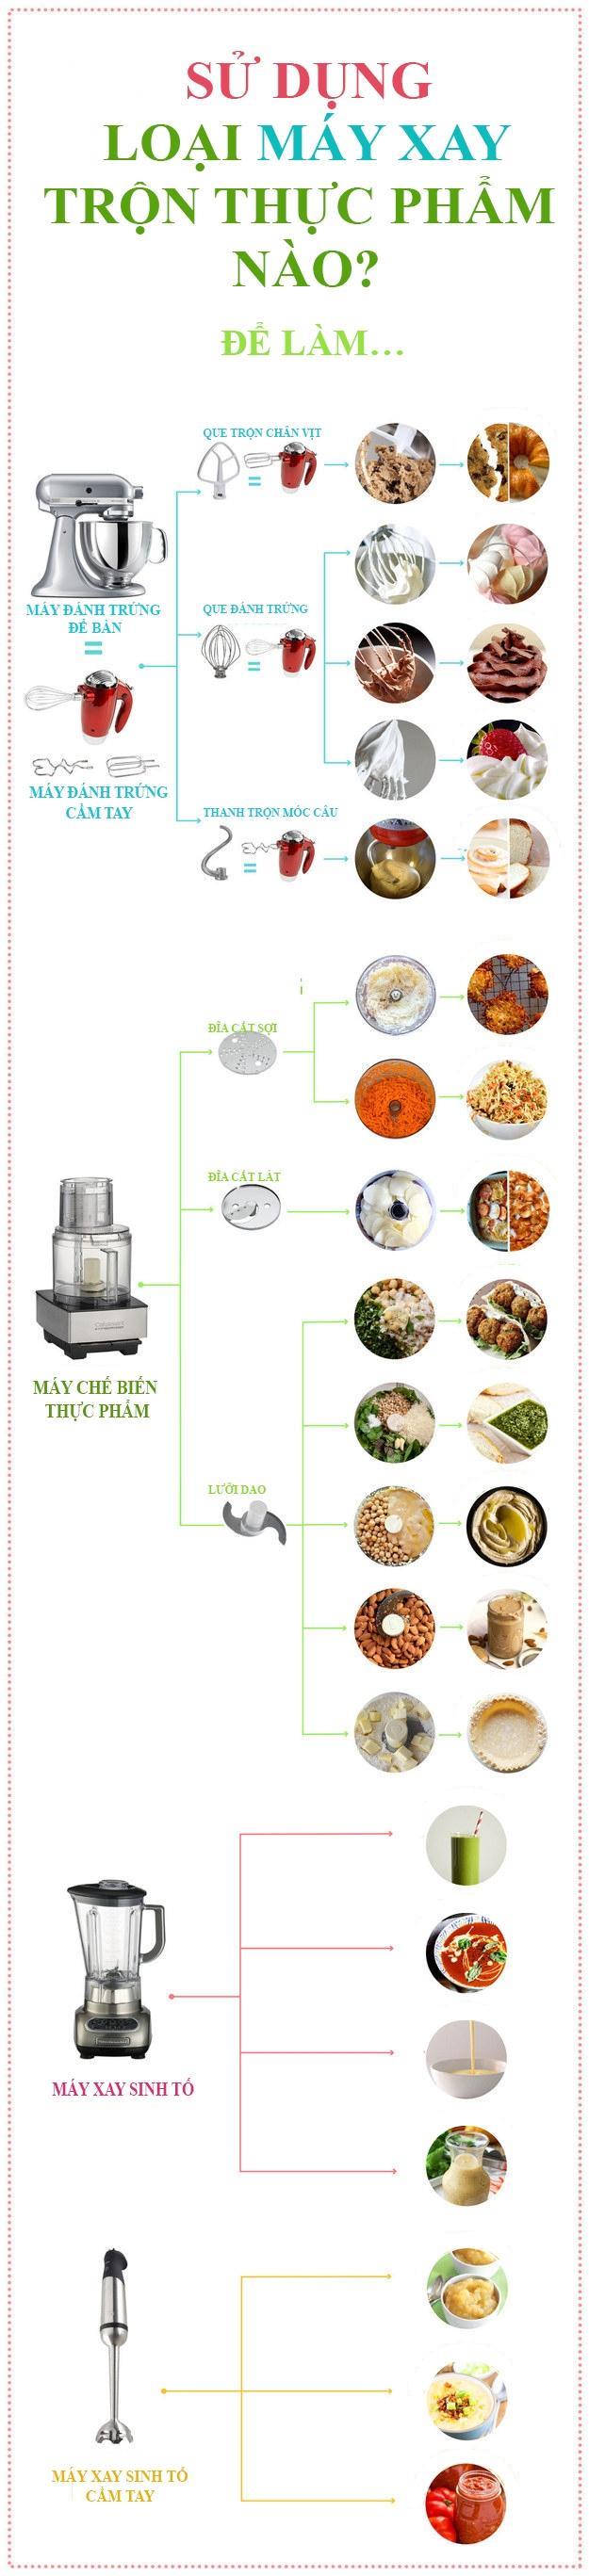 Aşağıdaki makinelerden hangisini seçmelisiniz: Gıda işleme, çırpma teli veya blender?